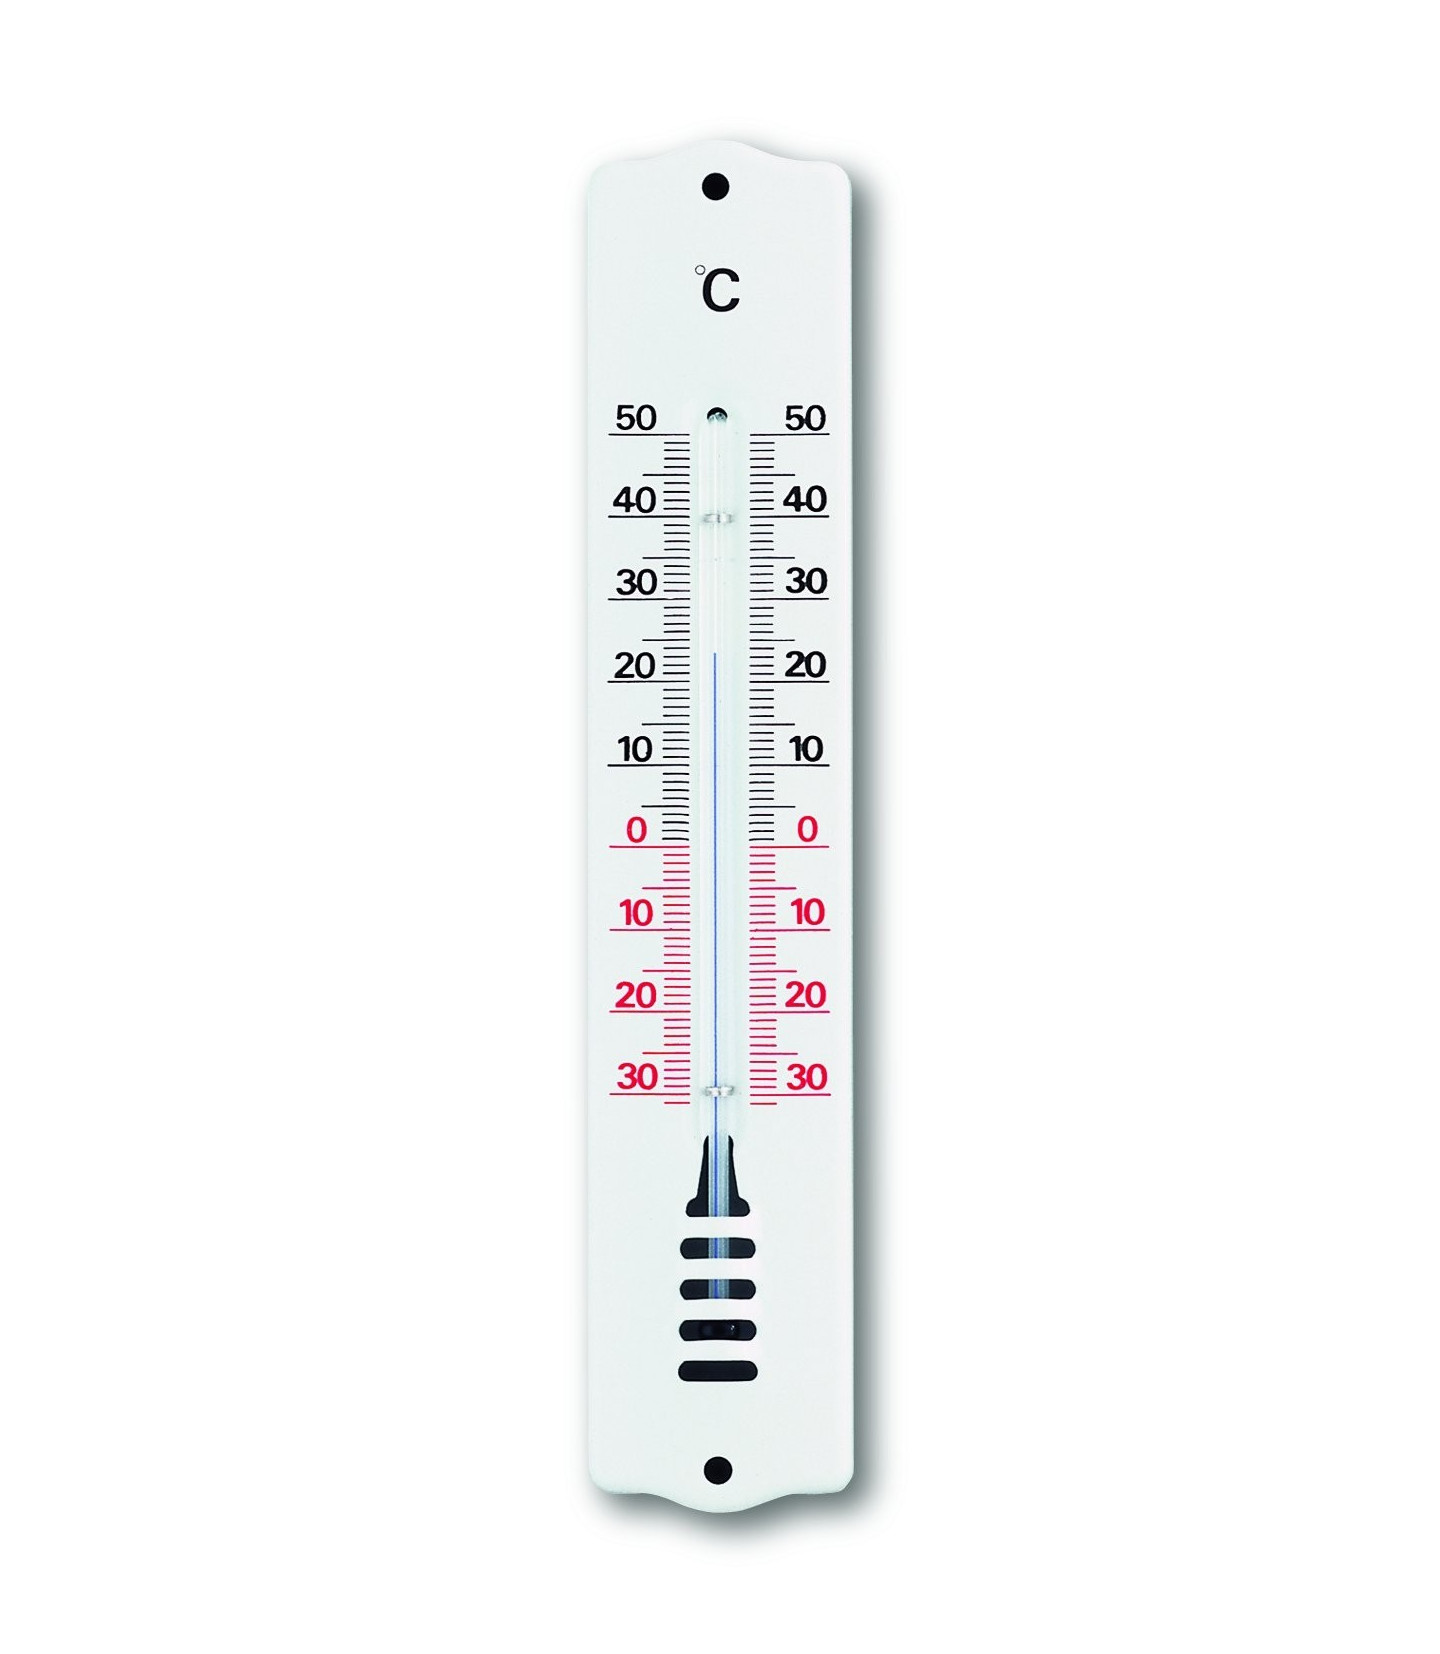 Thermomètre Extérieur Décoratif,Thermomètre Décoratif Intérieur Ou